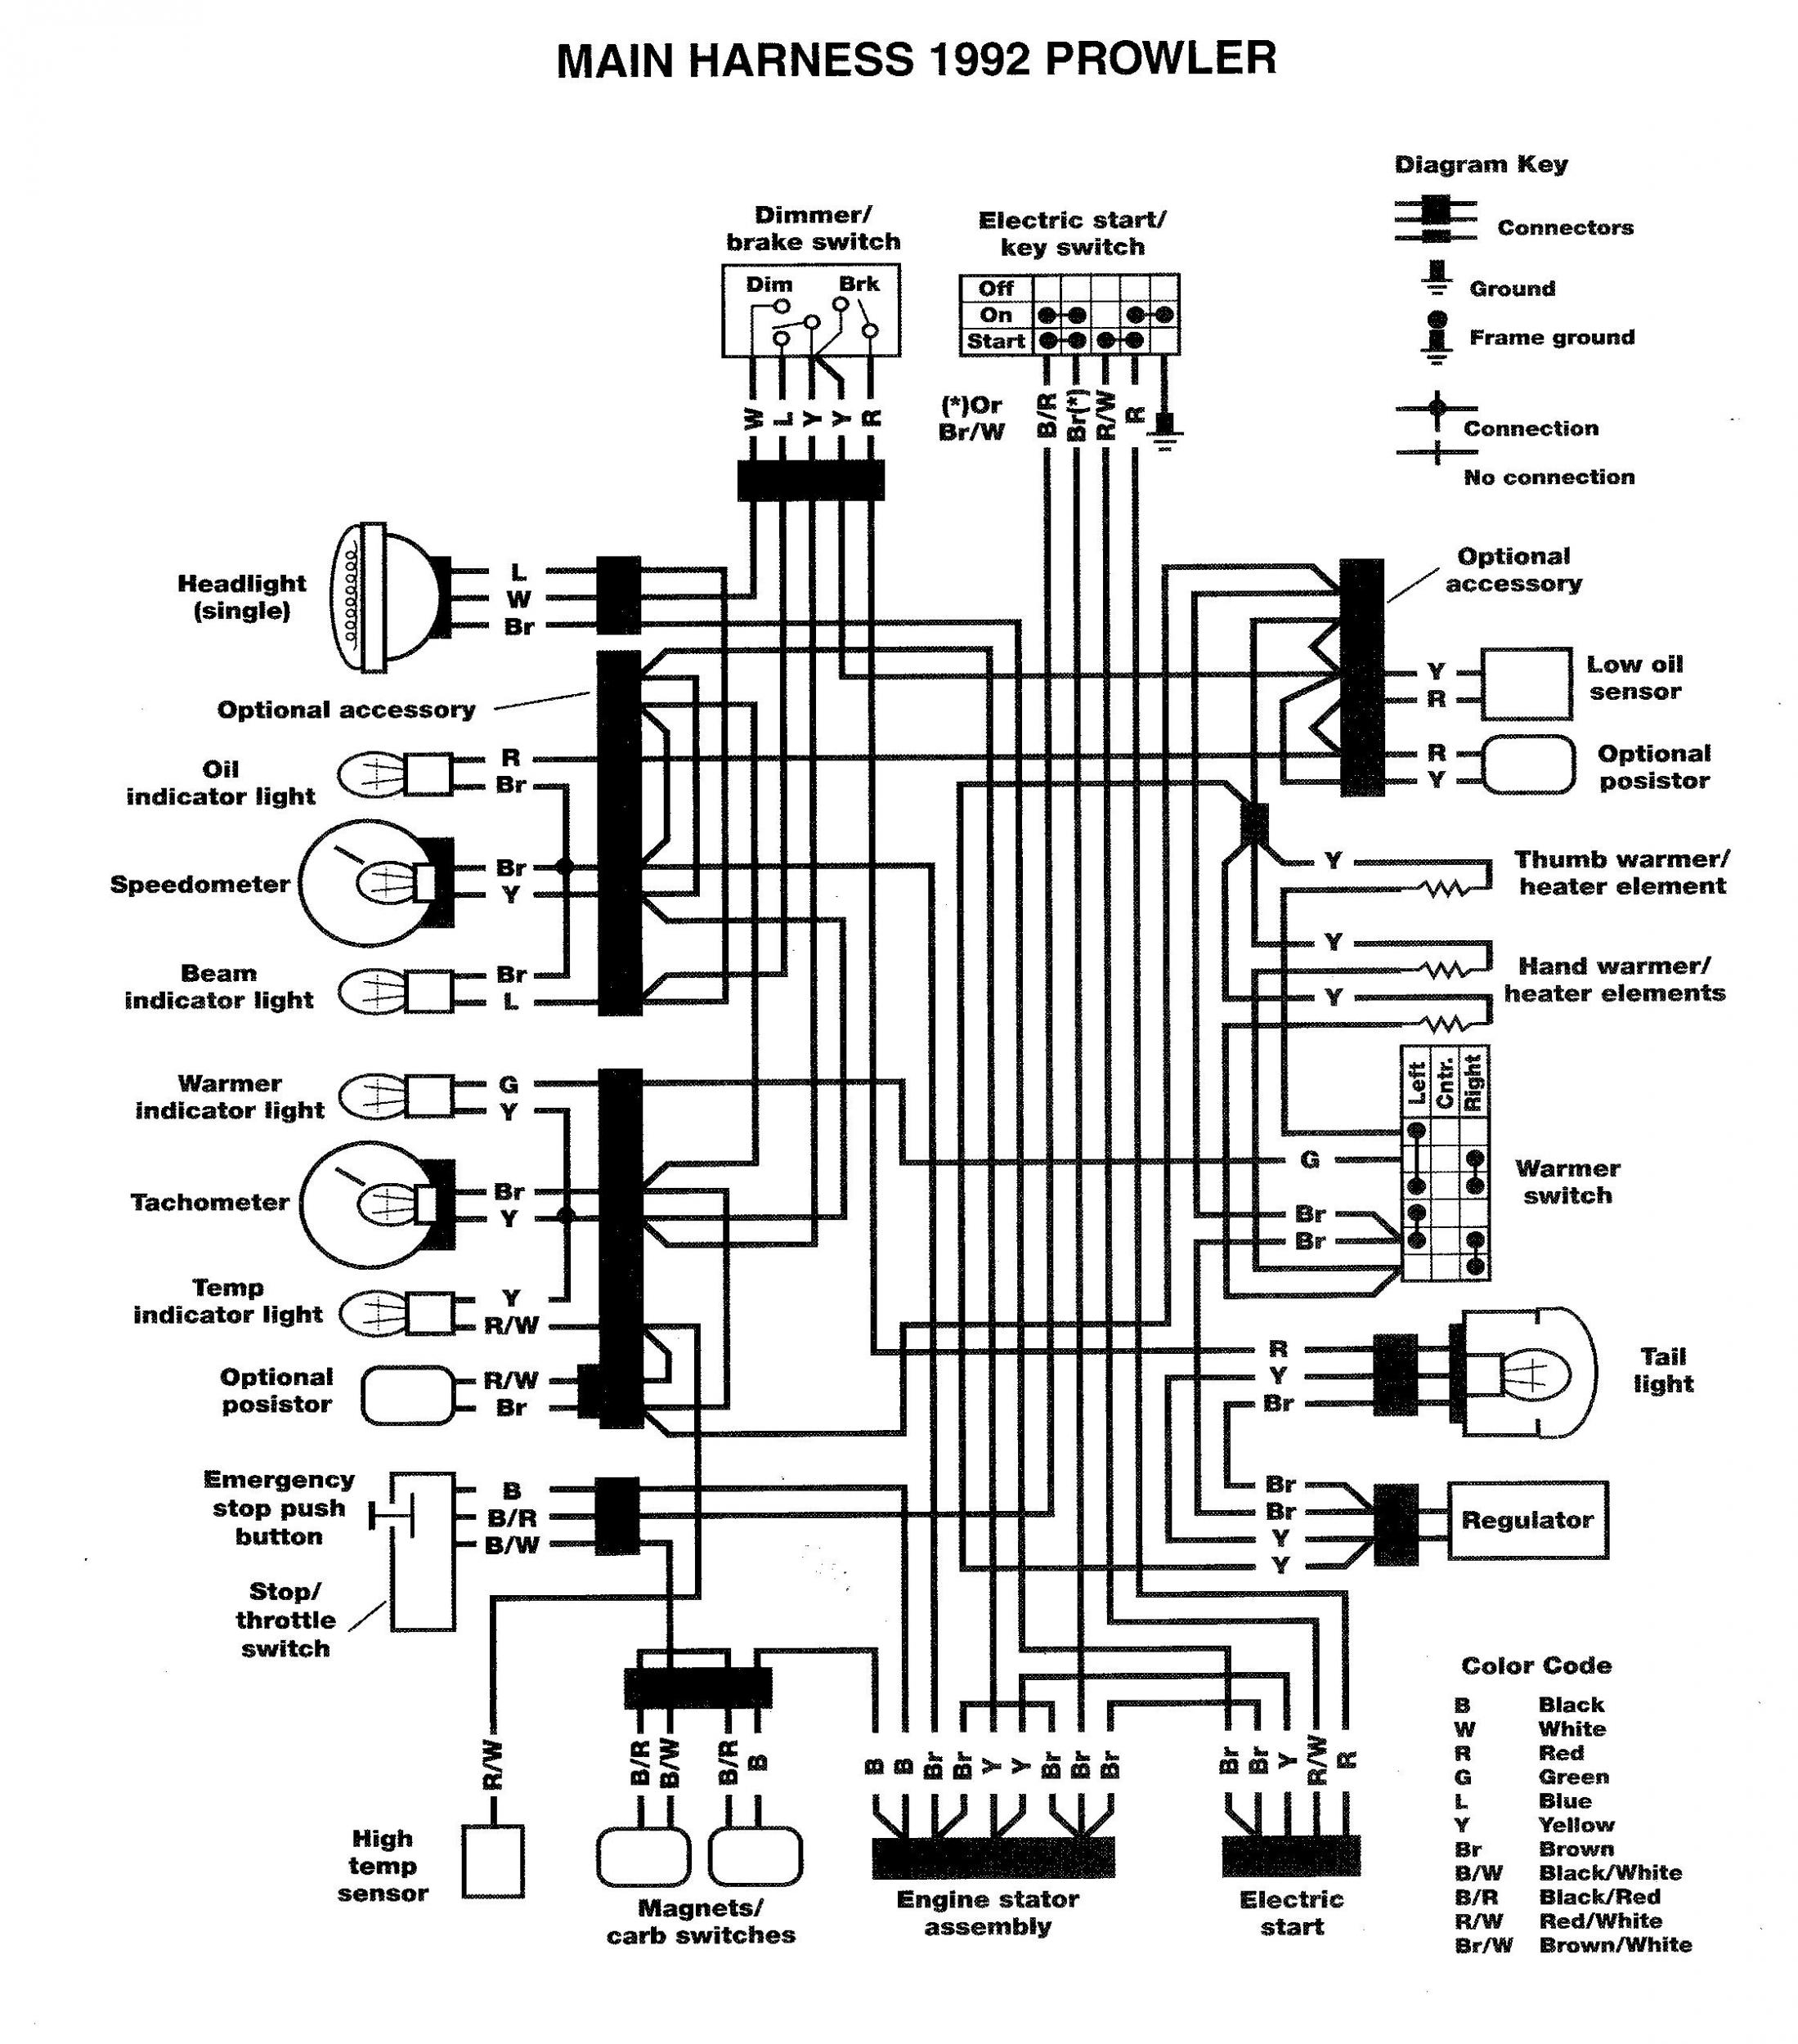 2010 Arctic Cat Wiring Diagram